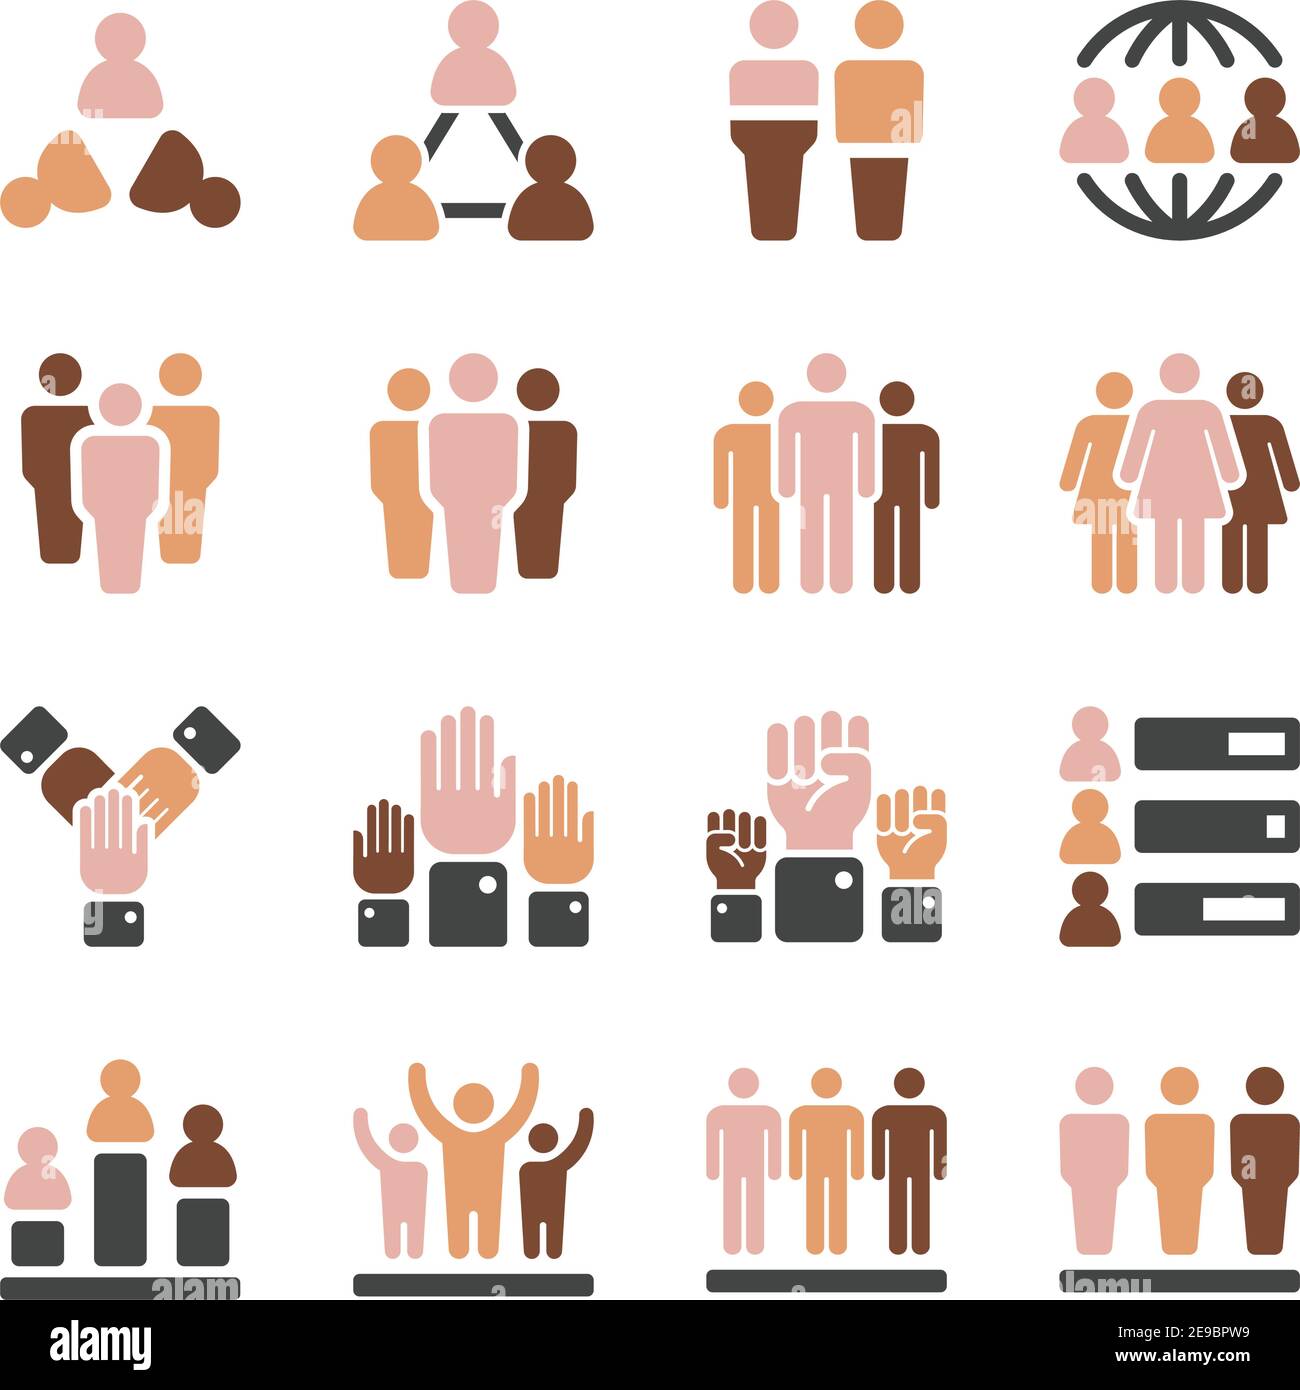 popolazione mondiale in serie di icone diferenti del tono della pelle, vettore e illustrazione Illustrazione Vettoriale